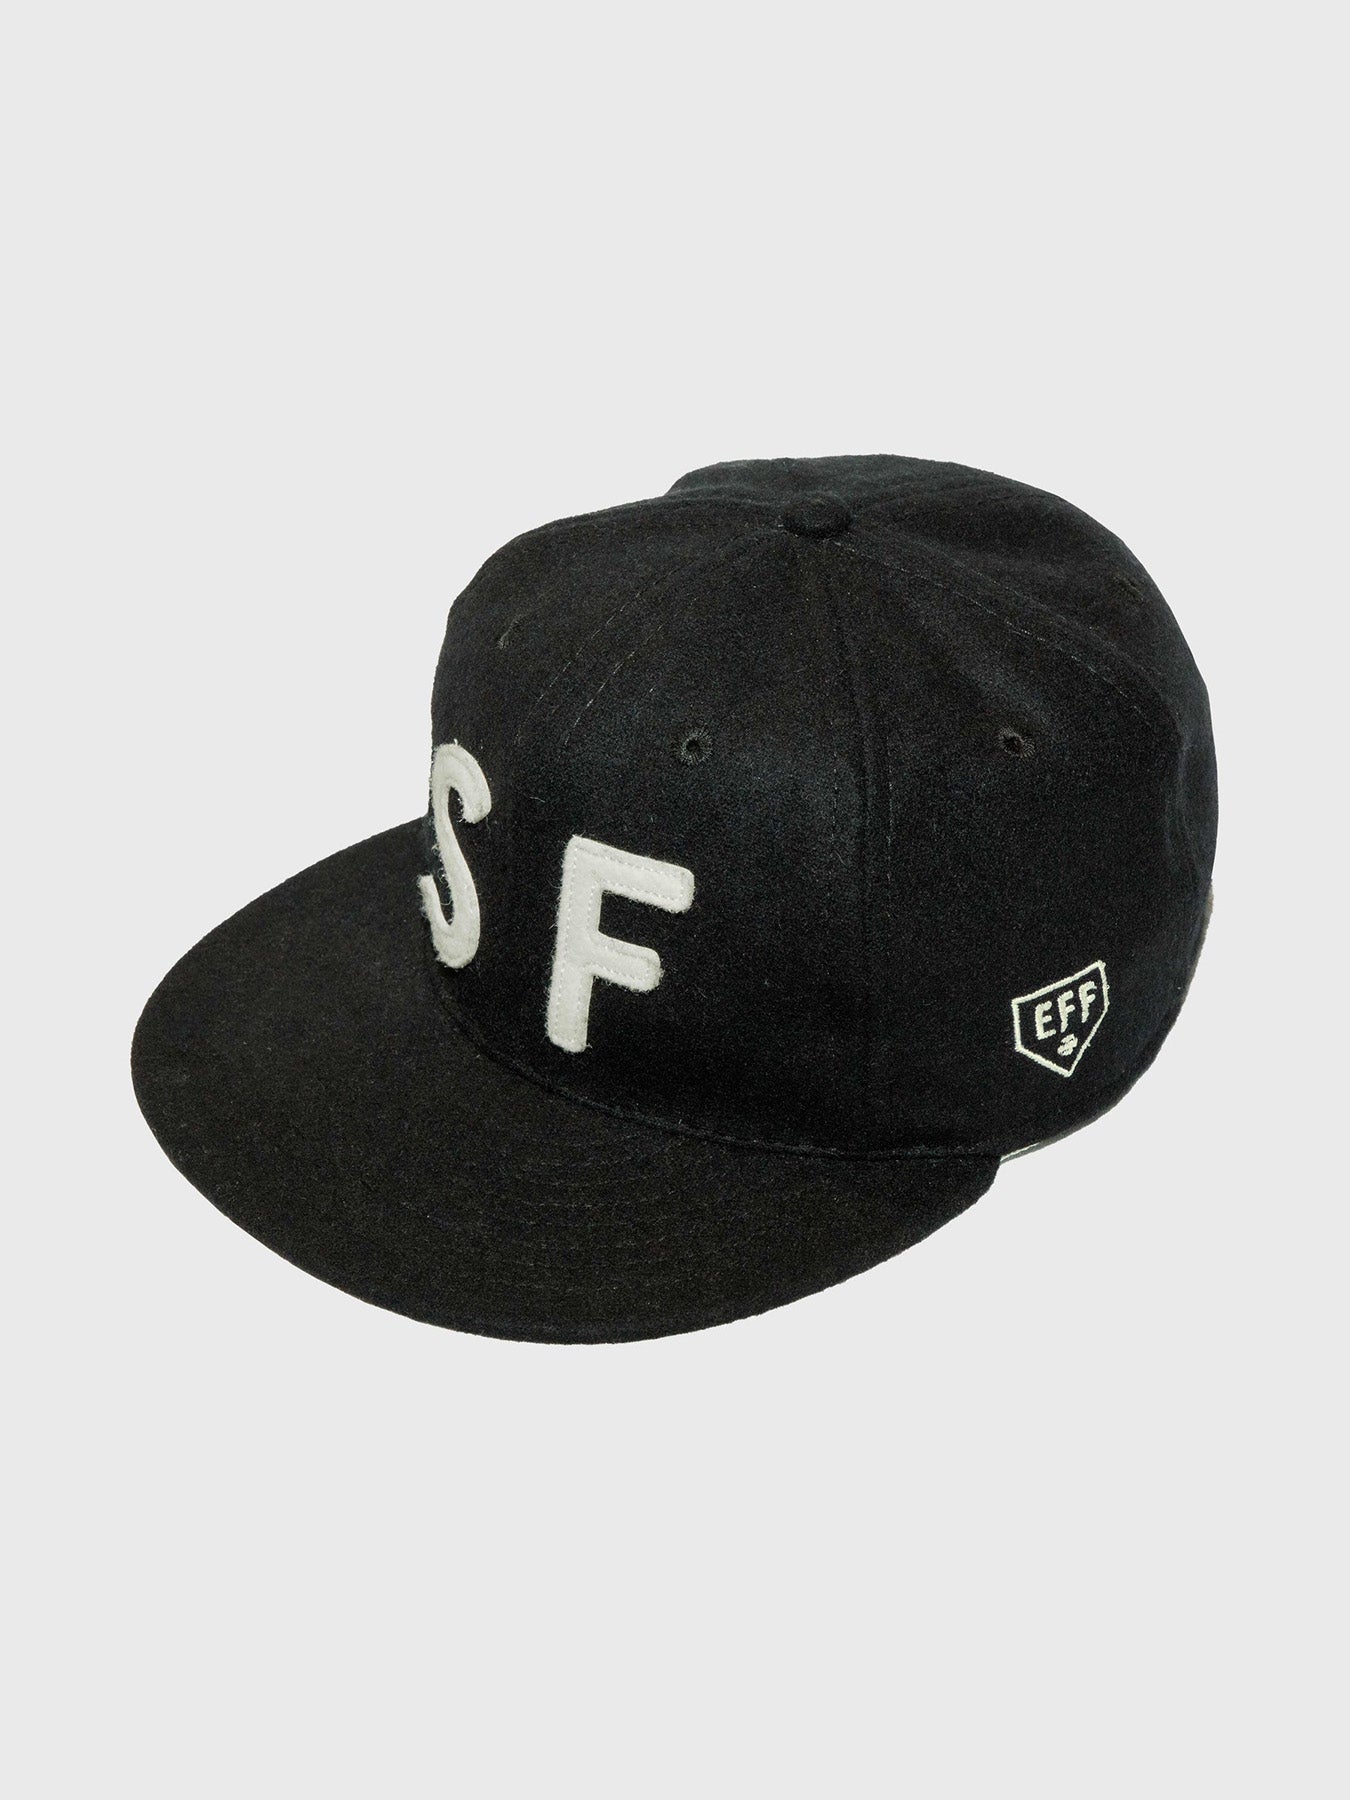 SF Ball cap